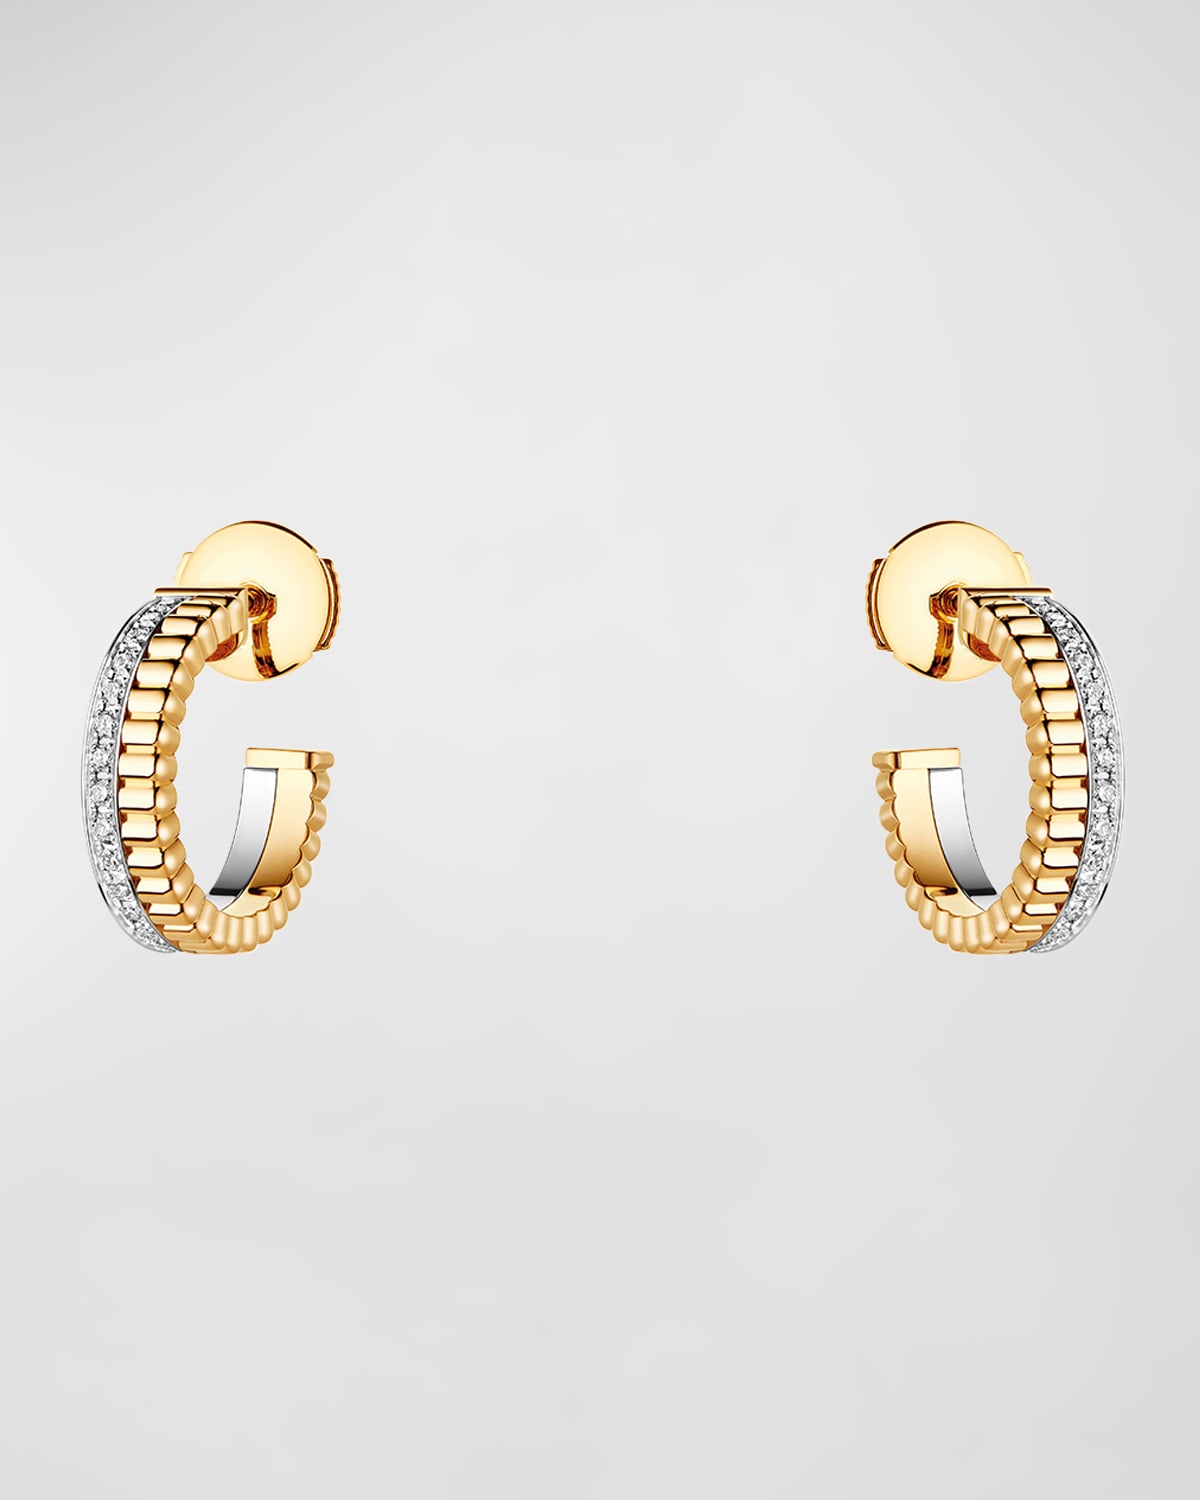 Boucheron Quatre Follies 18k Yellow/White Gold Diamond Earrings